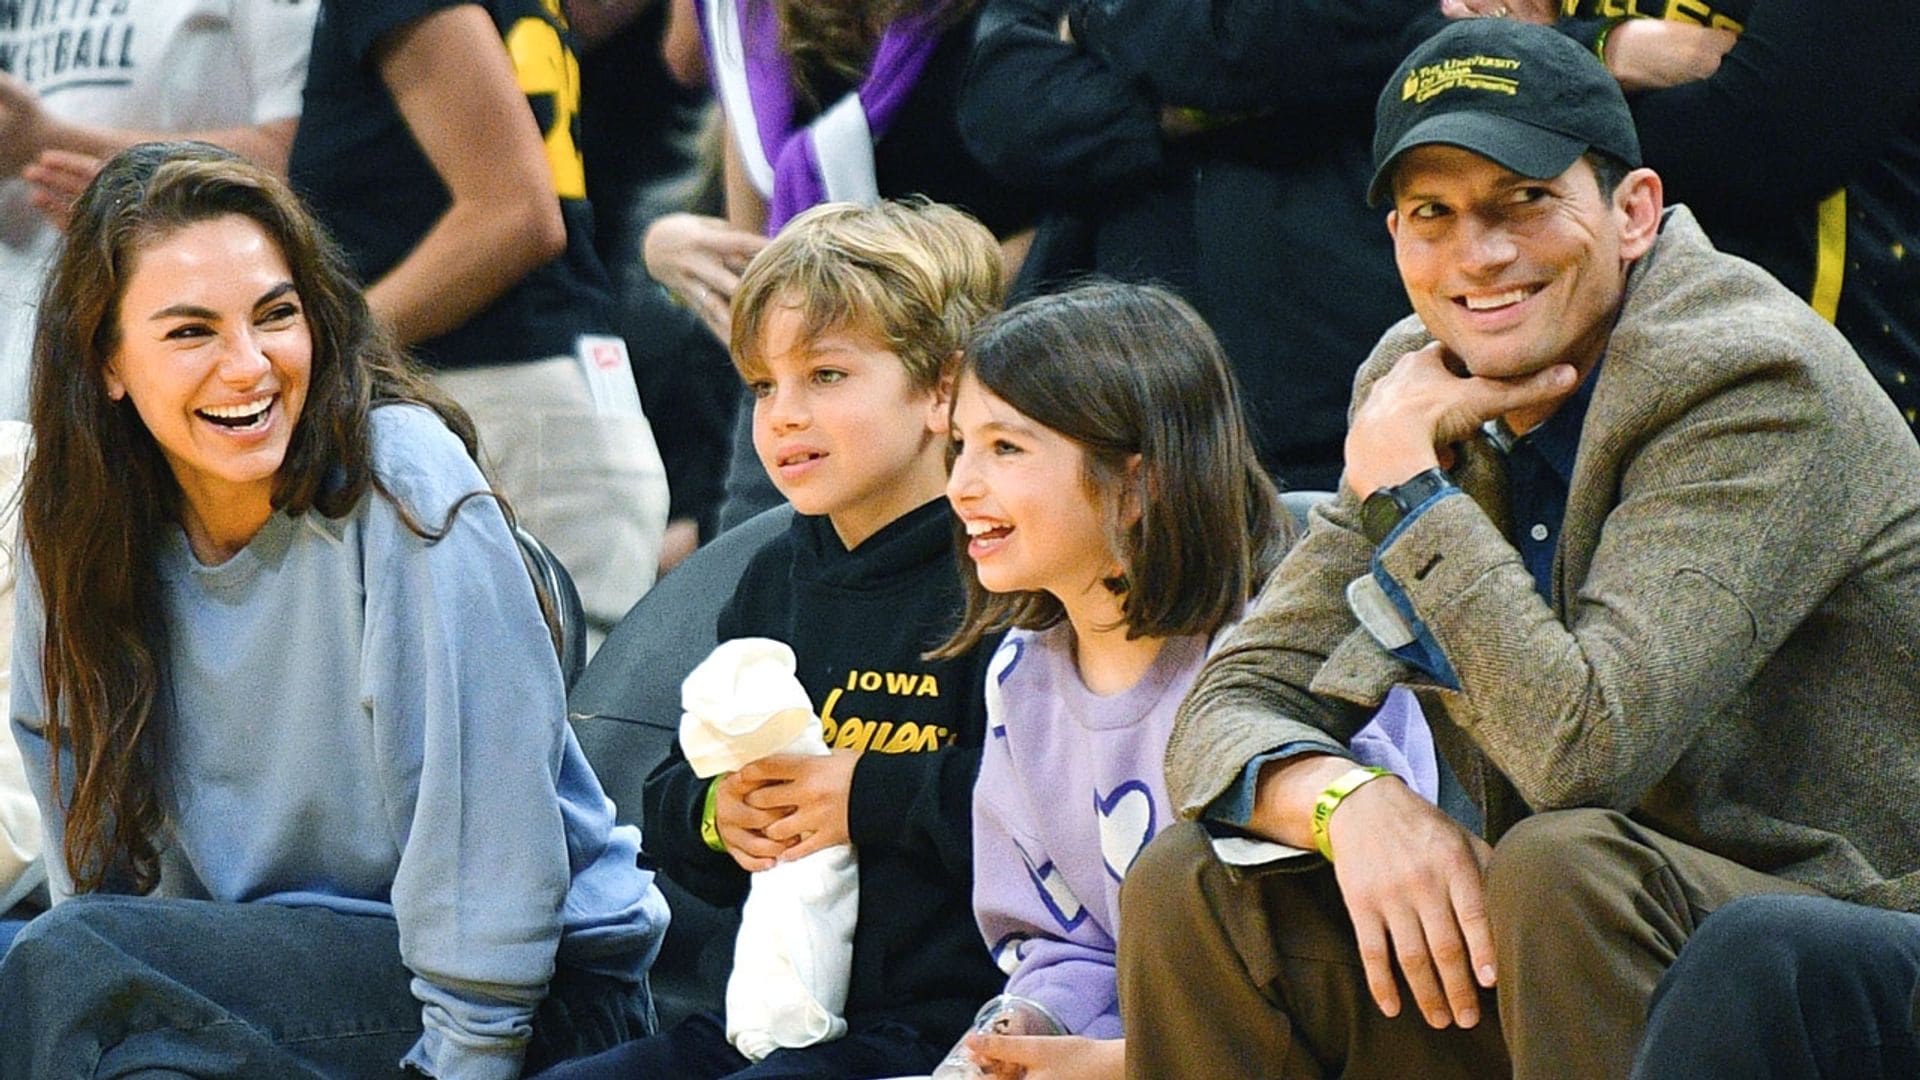 Ashton Kutcher y Mila Kunis reaparecen en público con sus hijos